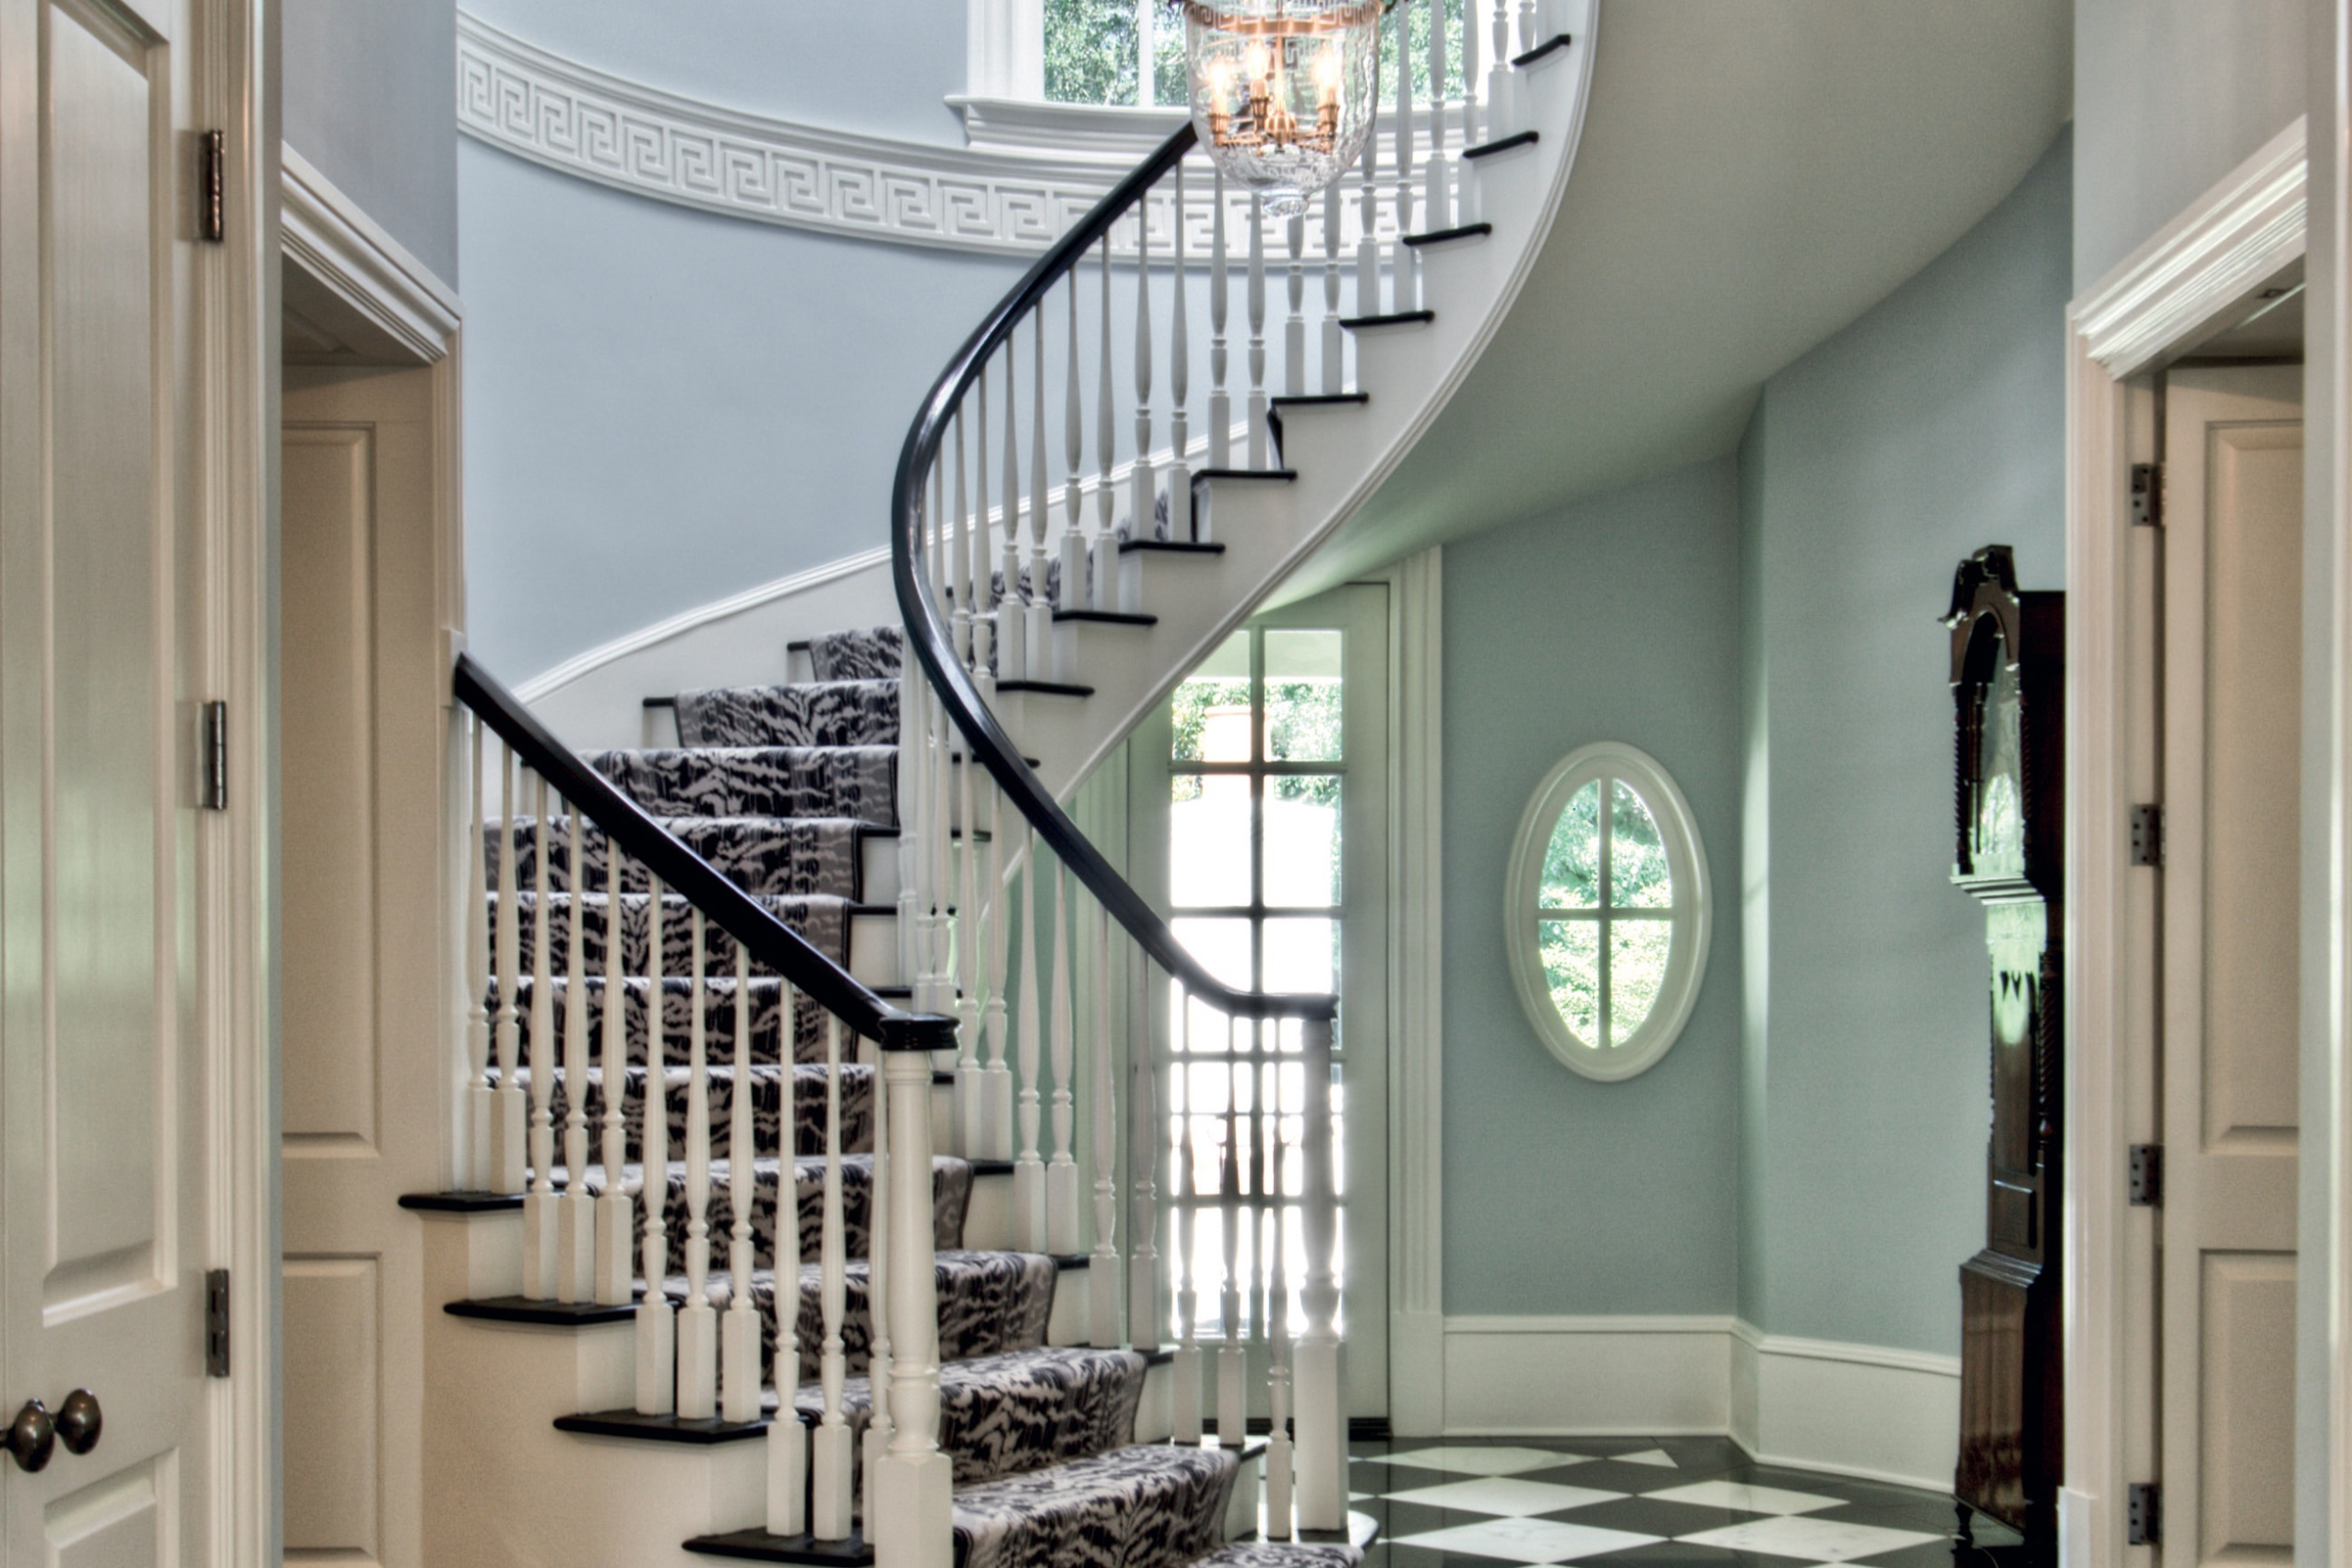 材料运用丰富也是摄政风格的一大特色，从大理石地面到象牙乌木混合的楼梯把手，都是以当代思维向古典致敬。